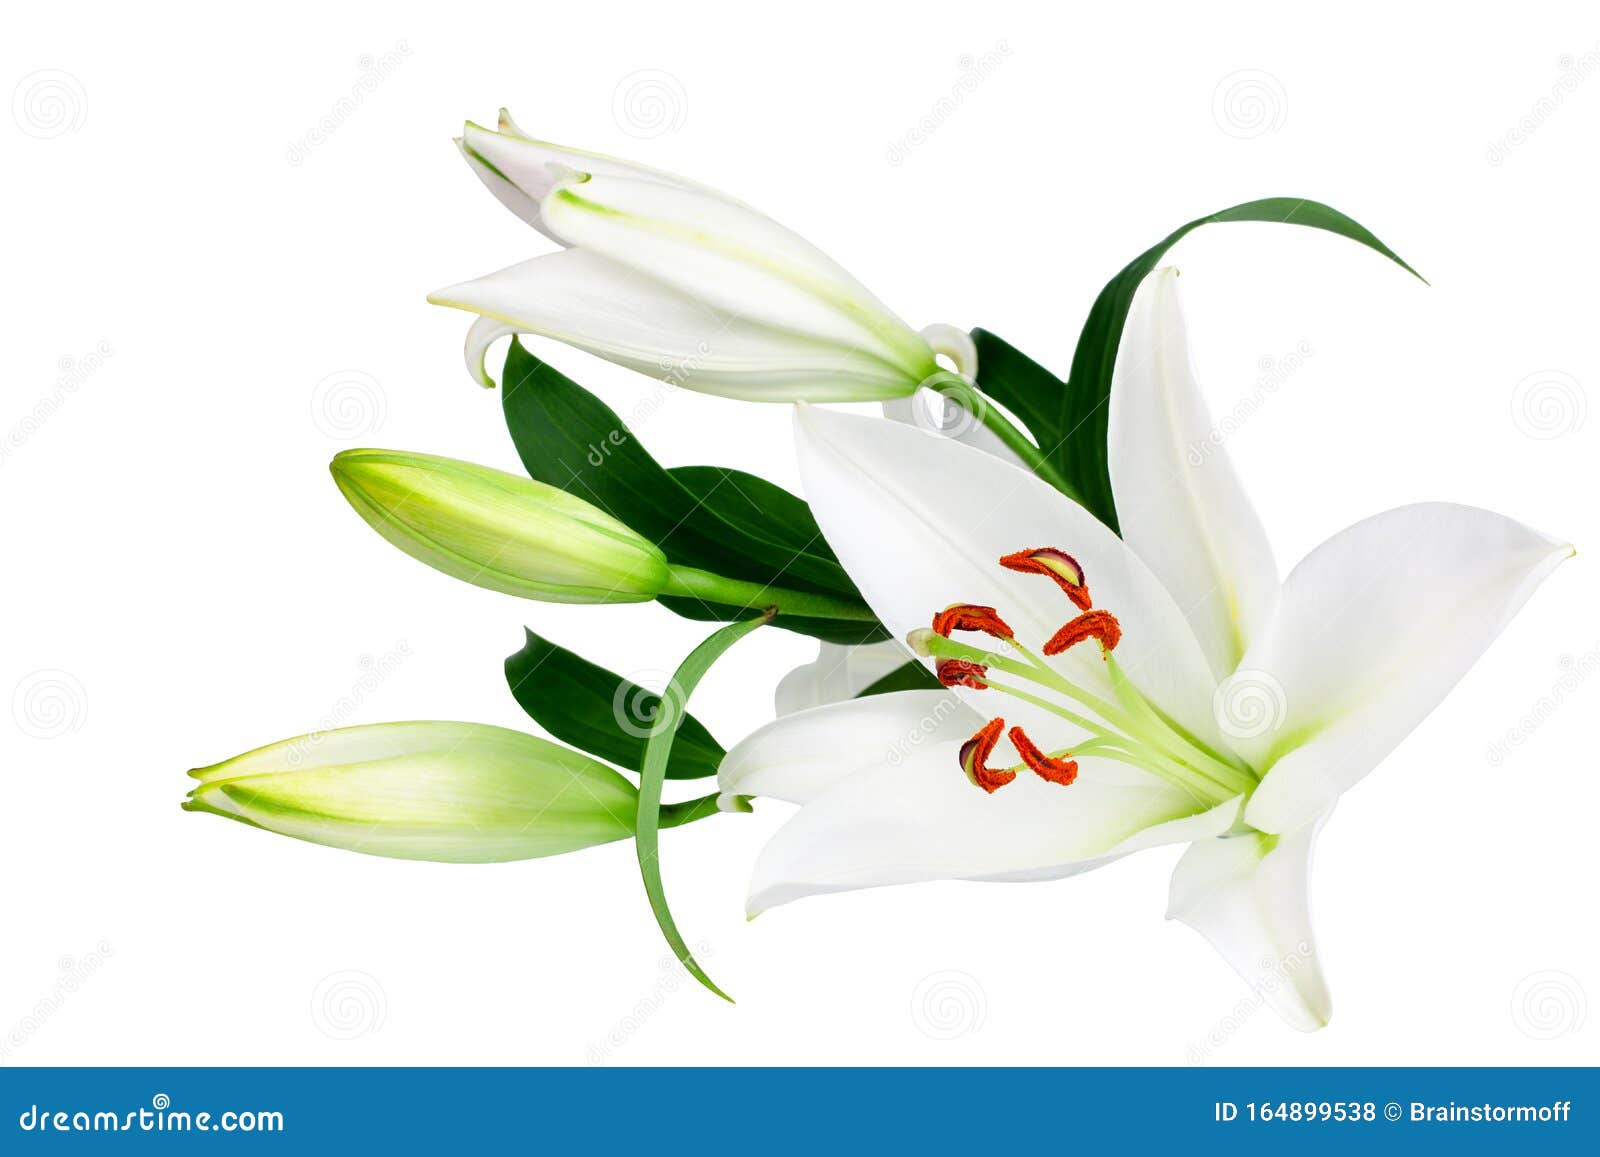 白色百合花和白色背景绿叶的花蕾 特写 百合花束 紫丁香花束 花图案库存照片 图片包括有邀请 玻色子